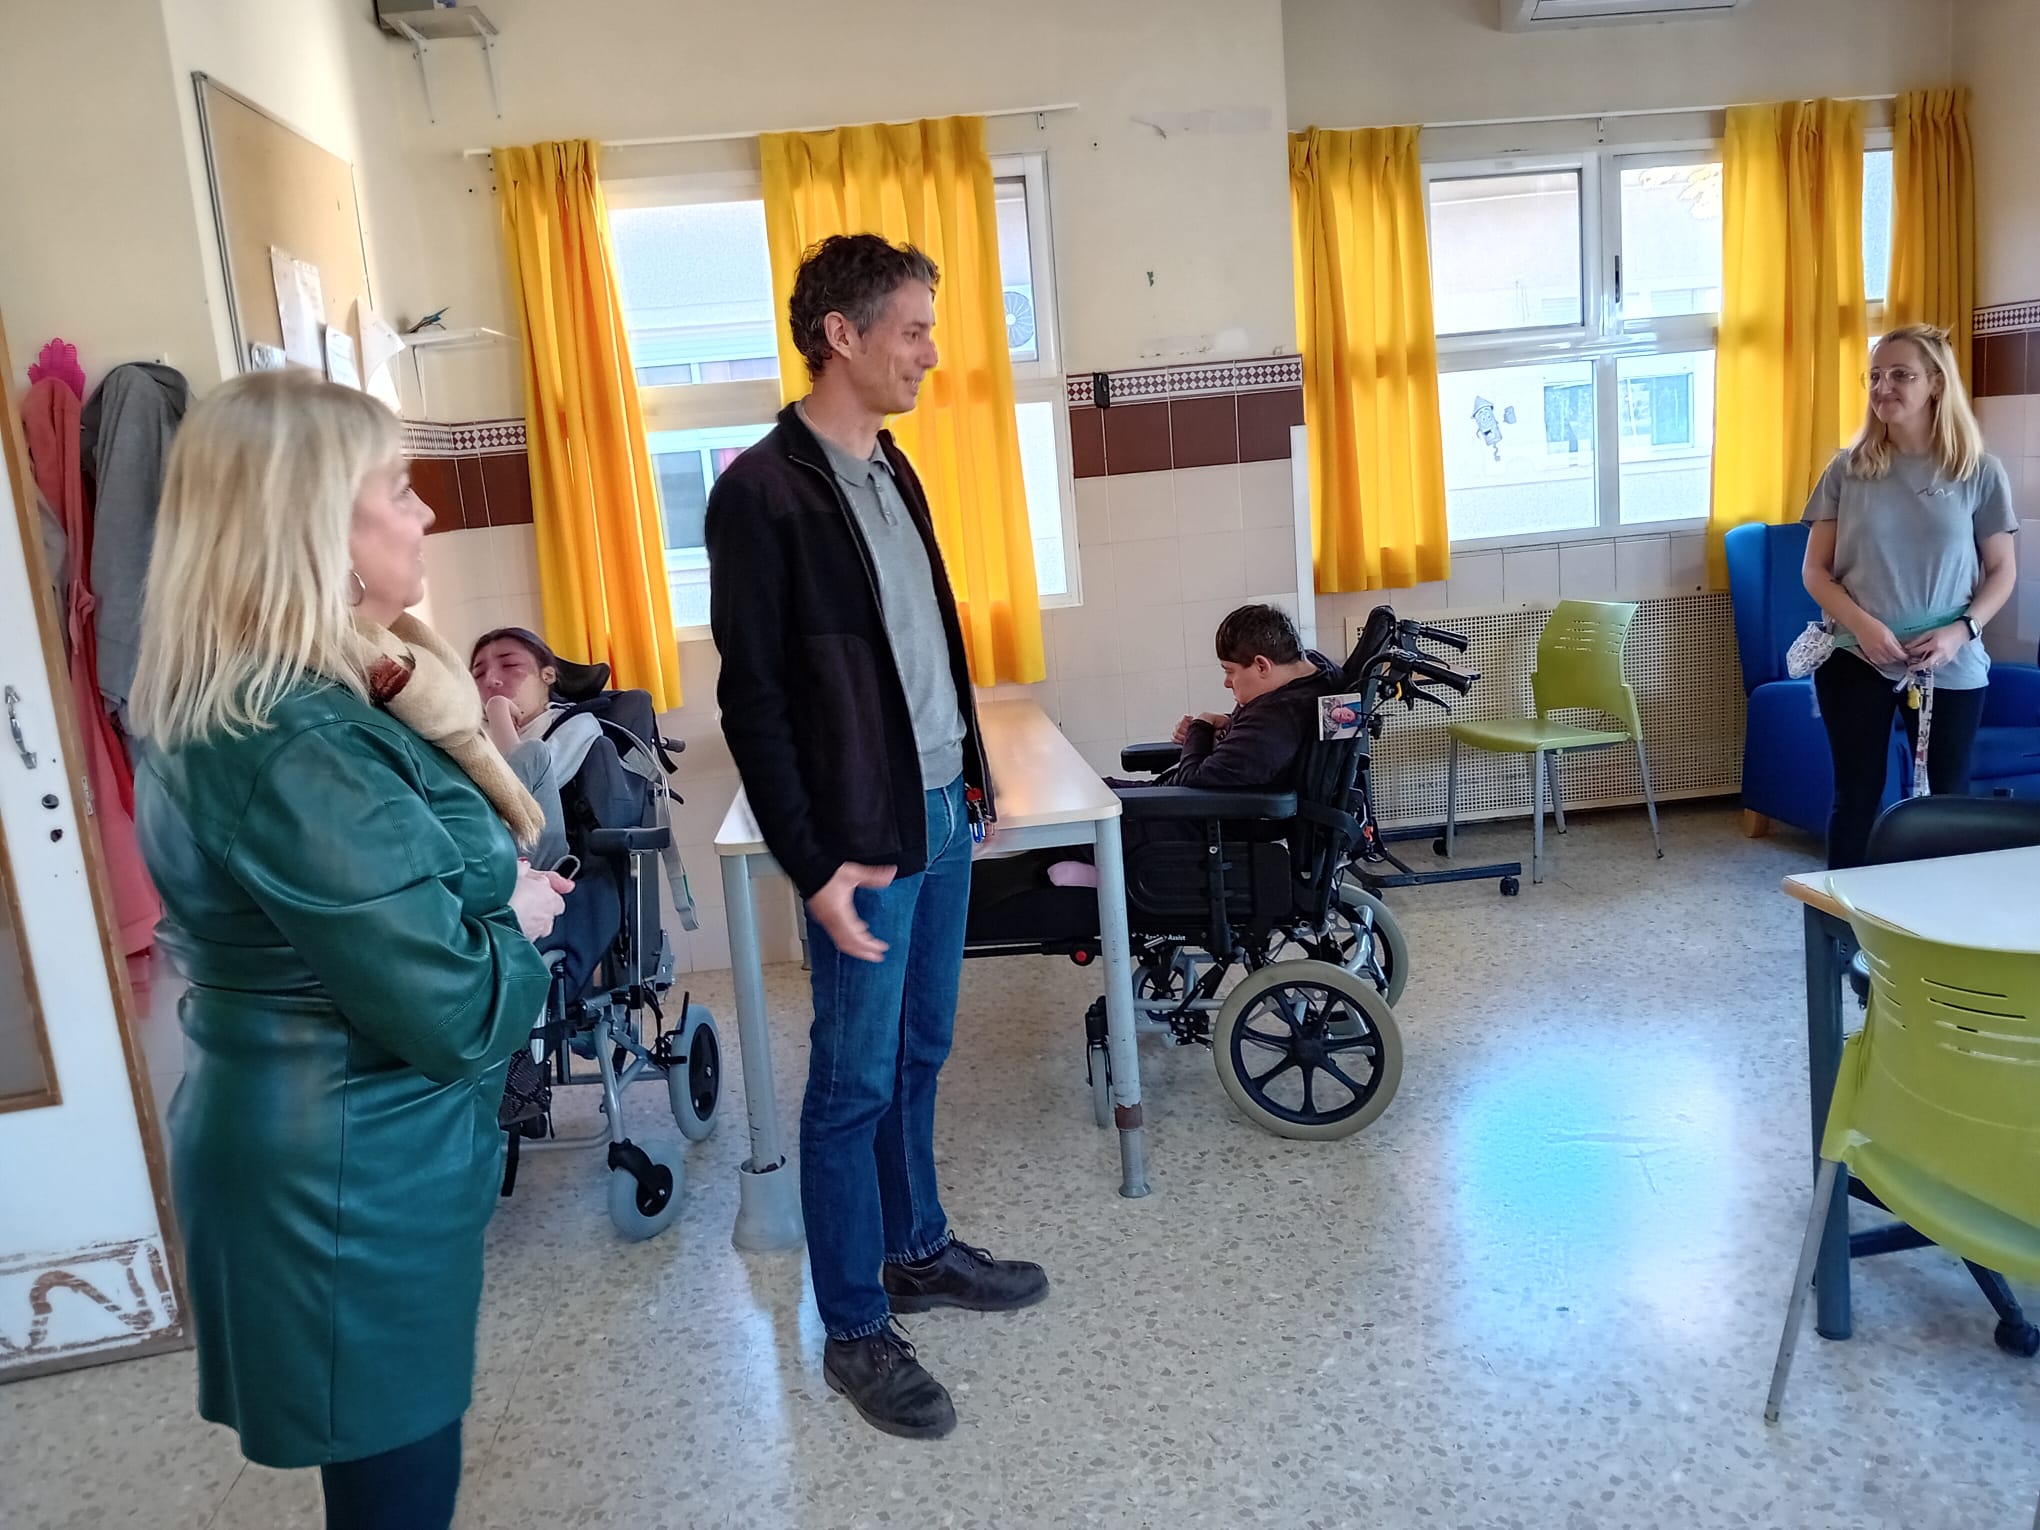 L’IVASS compta amb 429 places de persones amb discapacitat intel·lectual en huit residències a la província de València